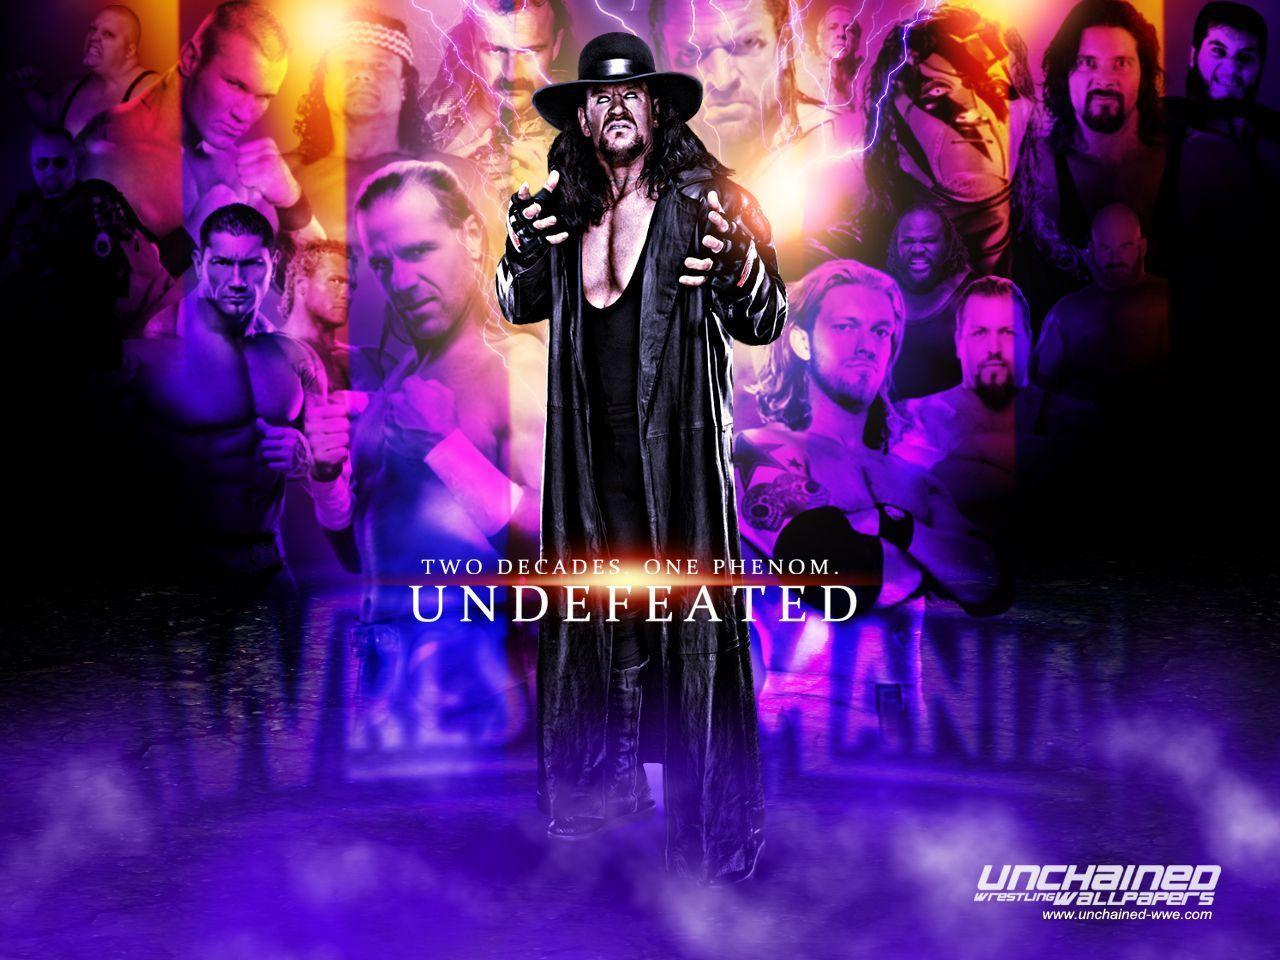 HD wallpaper The Undertaker wrestling wwe  Wallpaper Flare